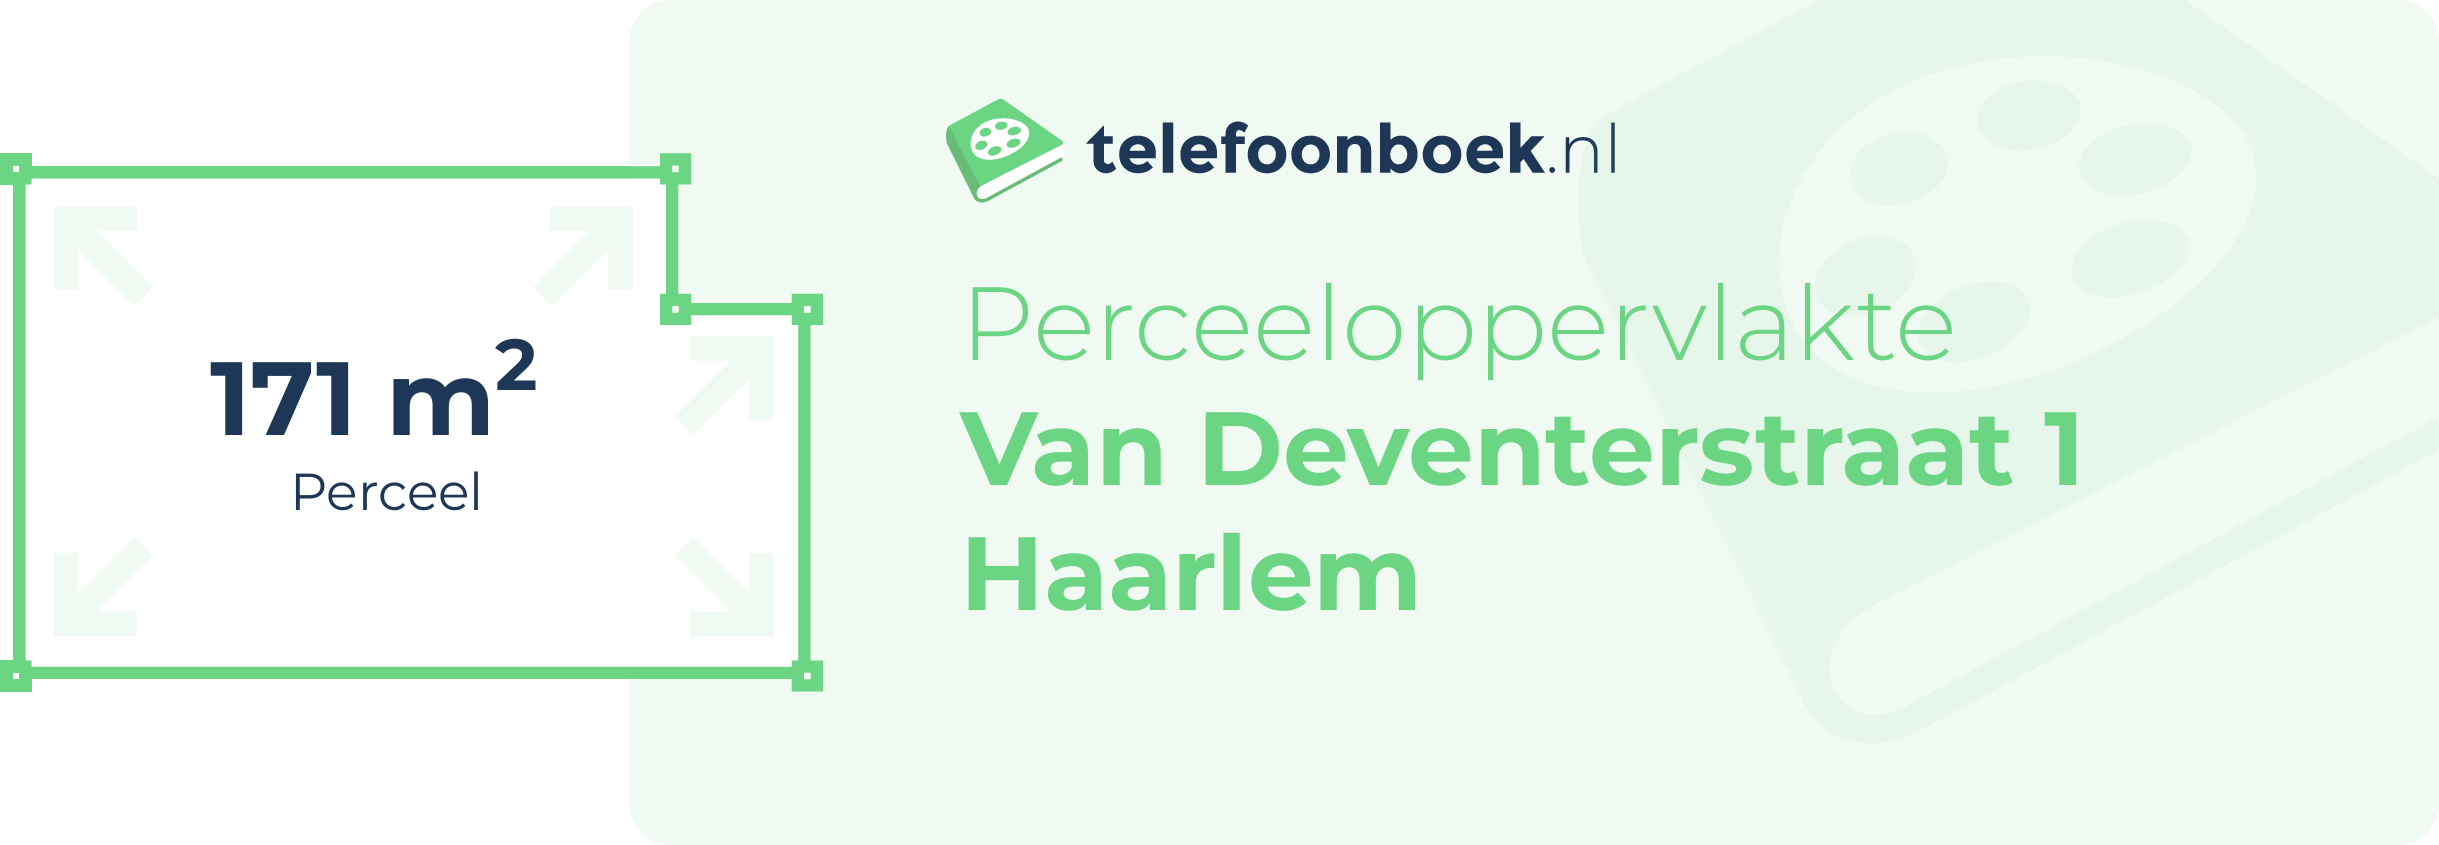 Perceeloppervlakte Van Deventerstraat 1 Haarlem